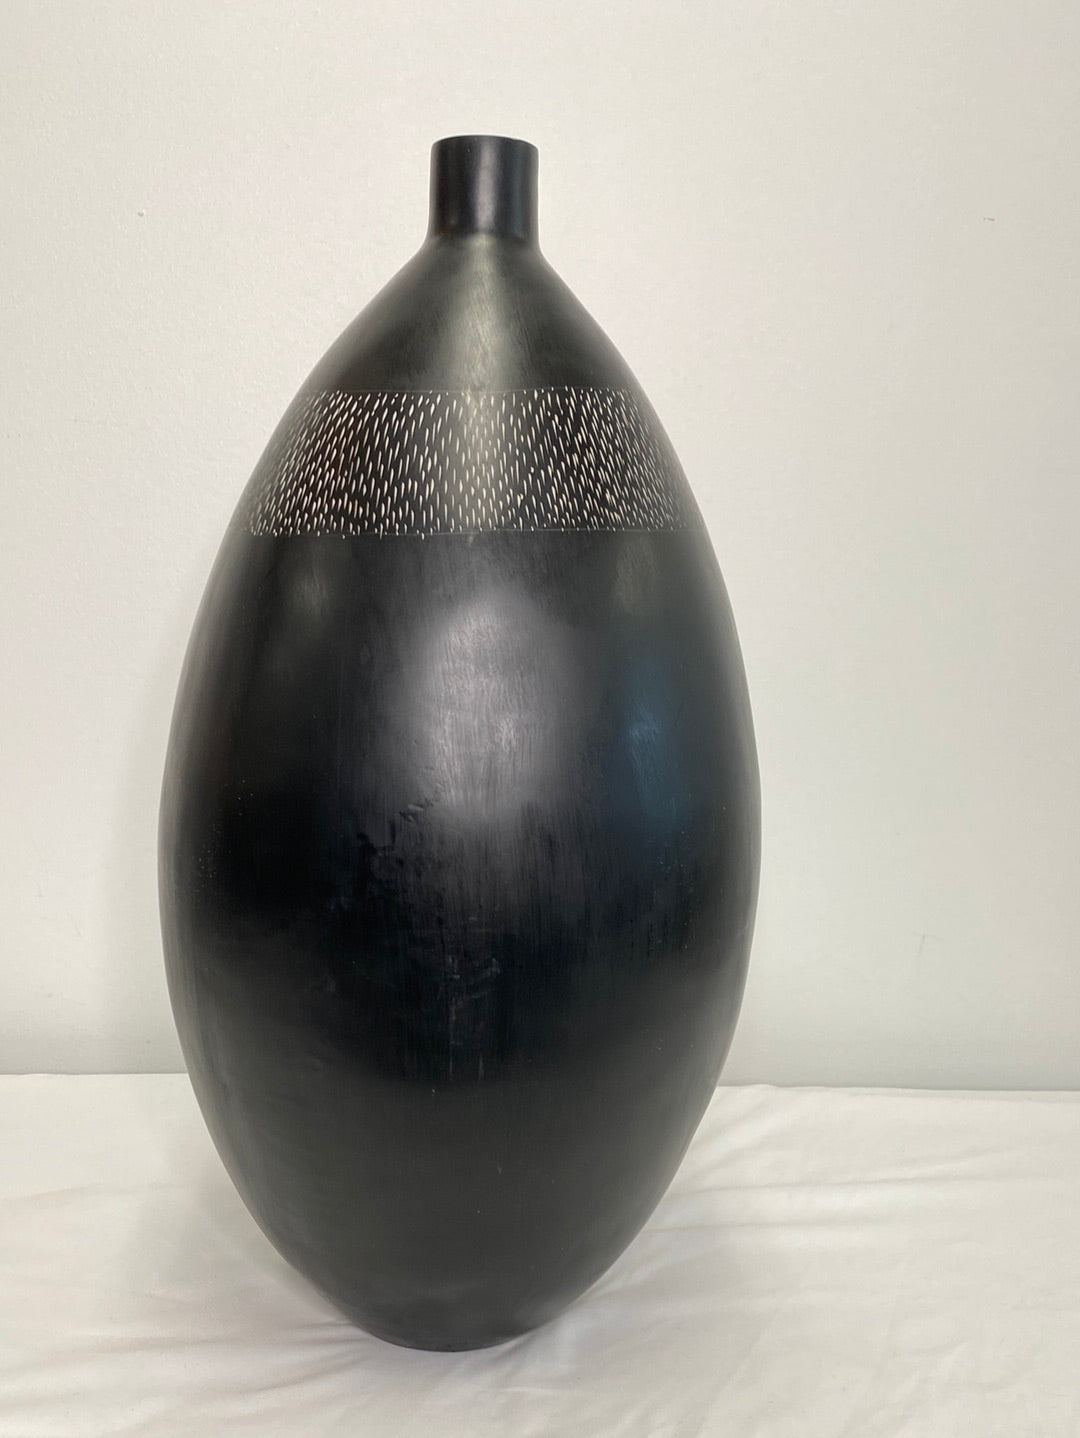 Large Oval Black Vase - sold separately